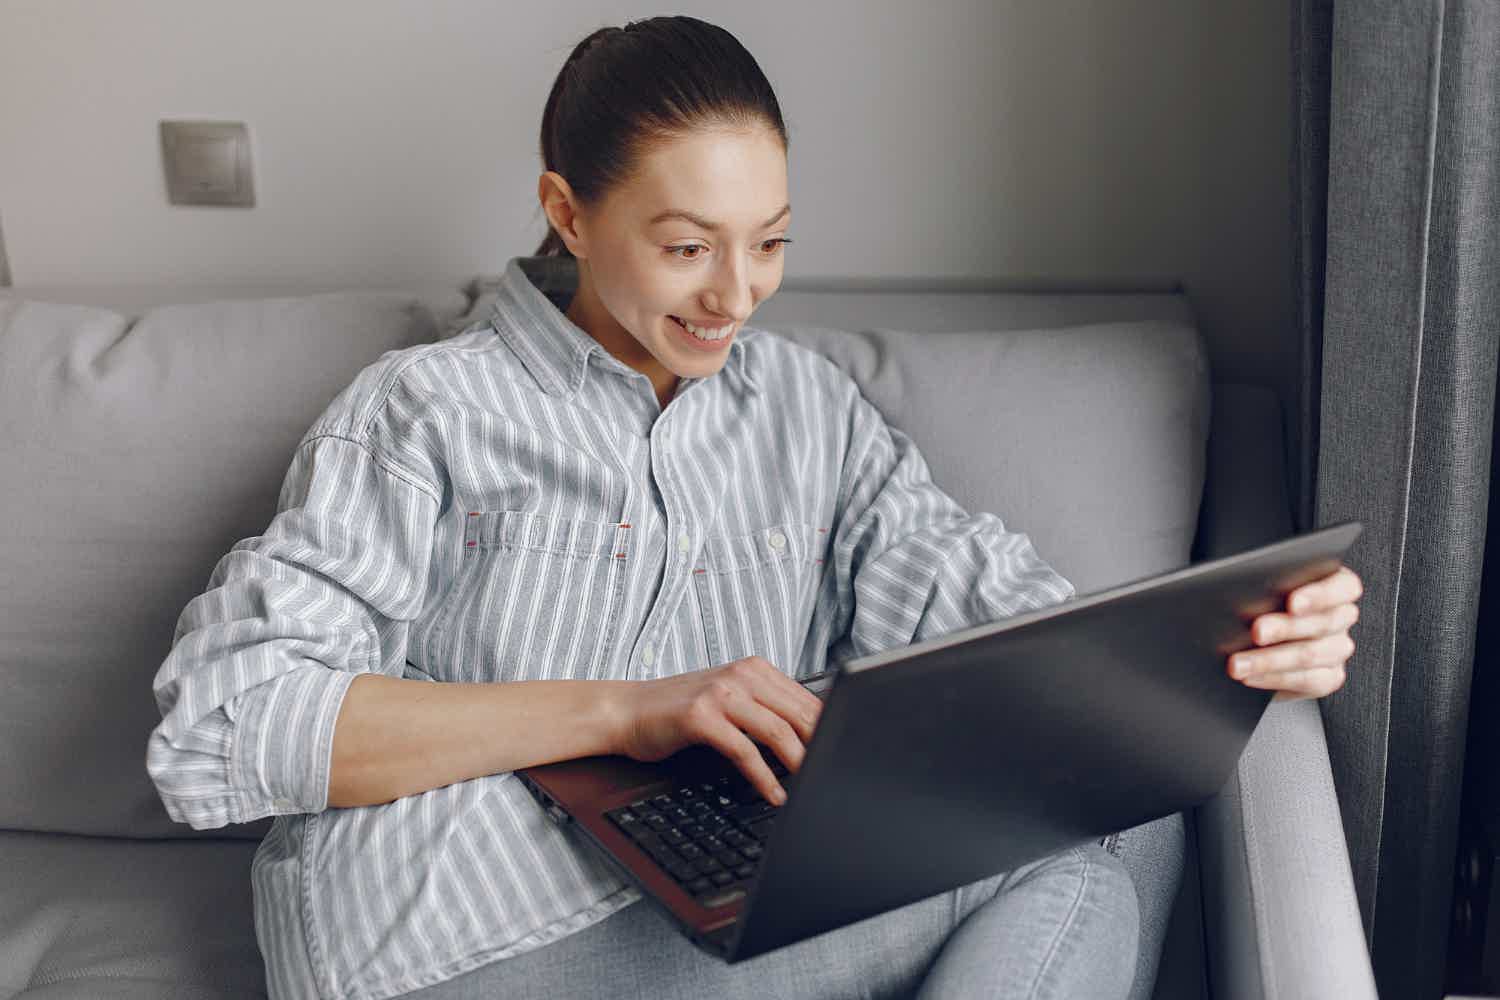 Mulher feliz usando camisa listrada enquanto usa seu notebook